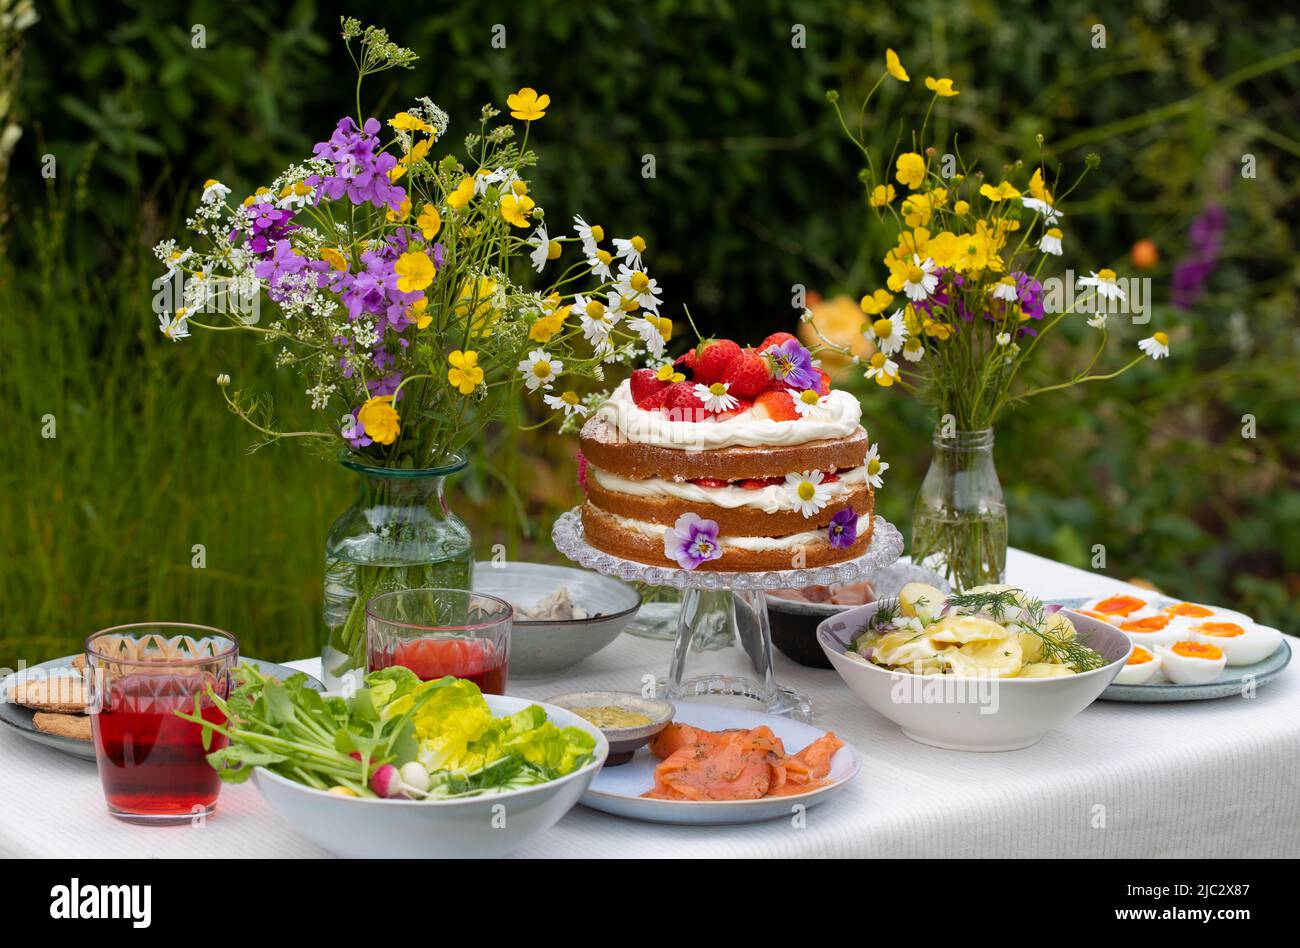 Pasto scandinavo di mezza estate con fragola e torta alla crema, insalata di patate, salmone e uova Foto Stock